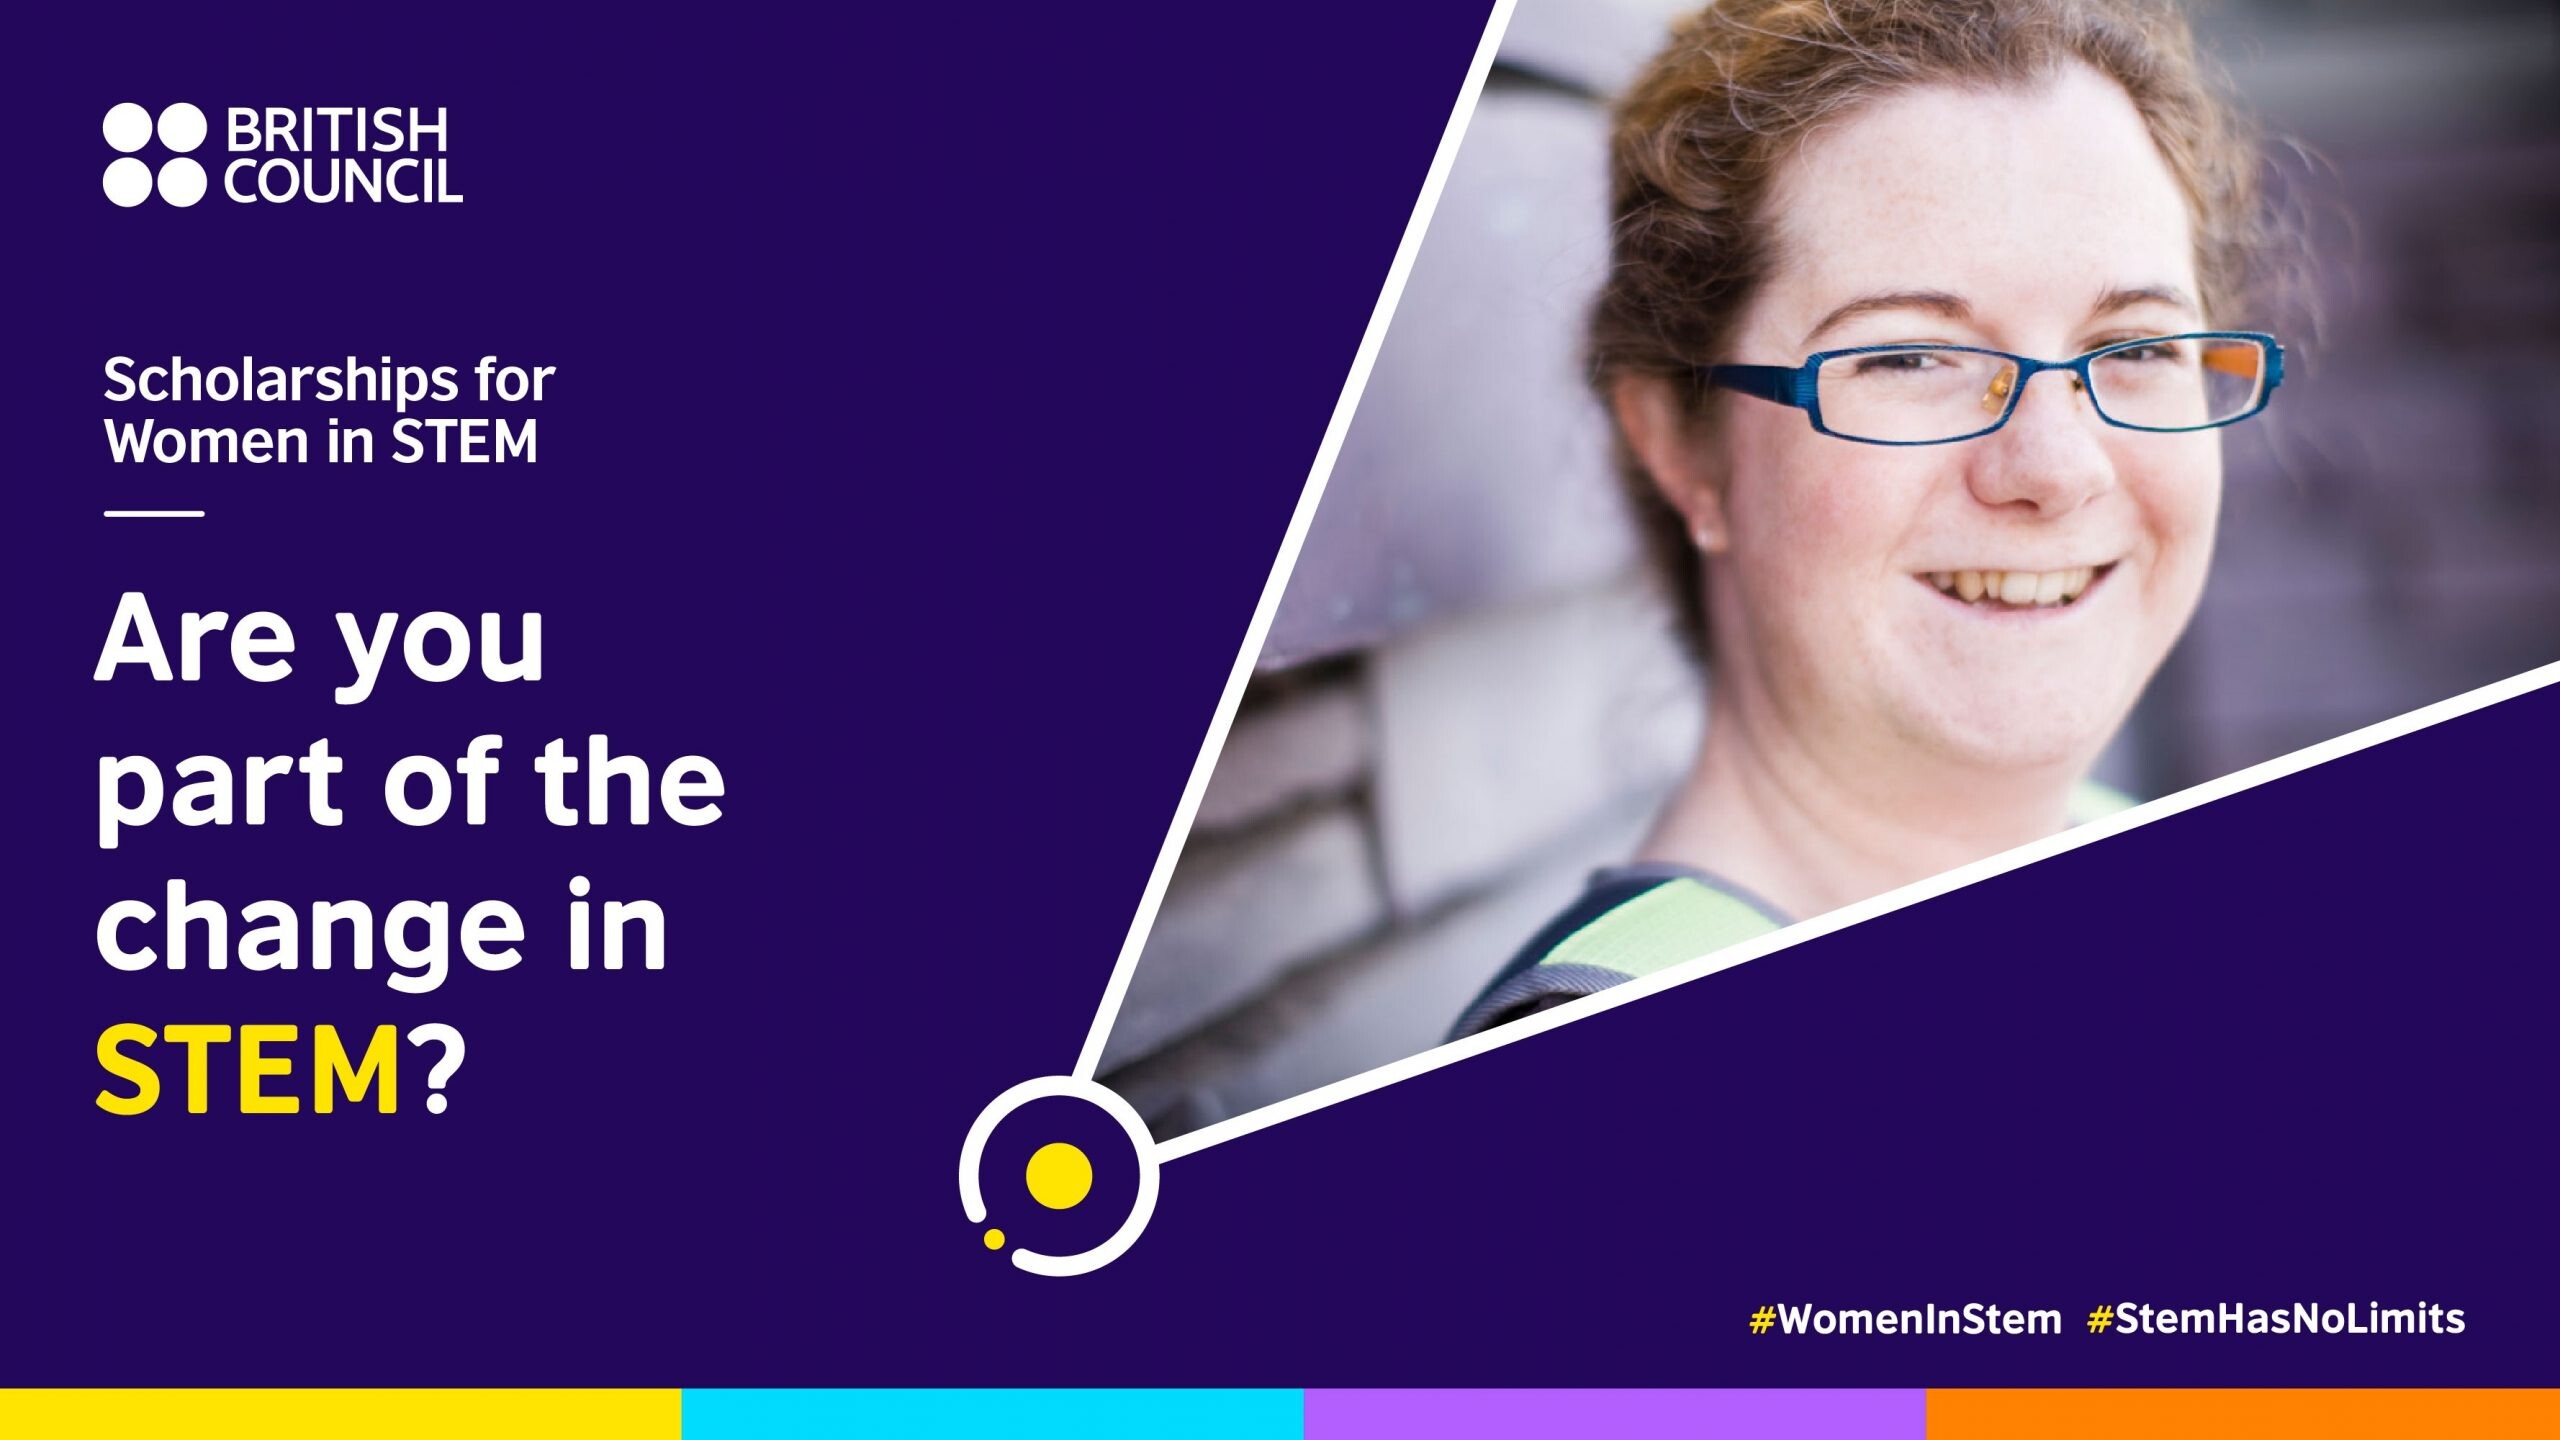 ทีม UK ห้ามพลาด! บริติช เคานซิล เปิดรับสมัครทุน Women in STEM สำหรับผู้หญิงในแวดวง STEM จำนวนรวม 29 ทุน จาก 6 มหาวิทาลัยชั้นนำในสหราชอาณาจักร